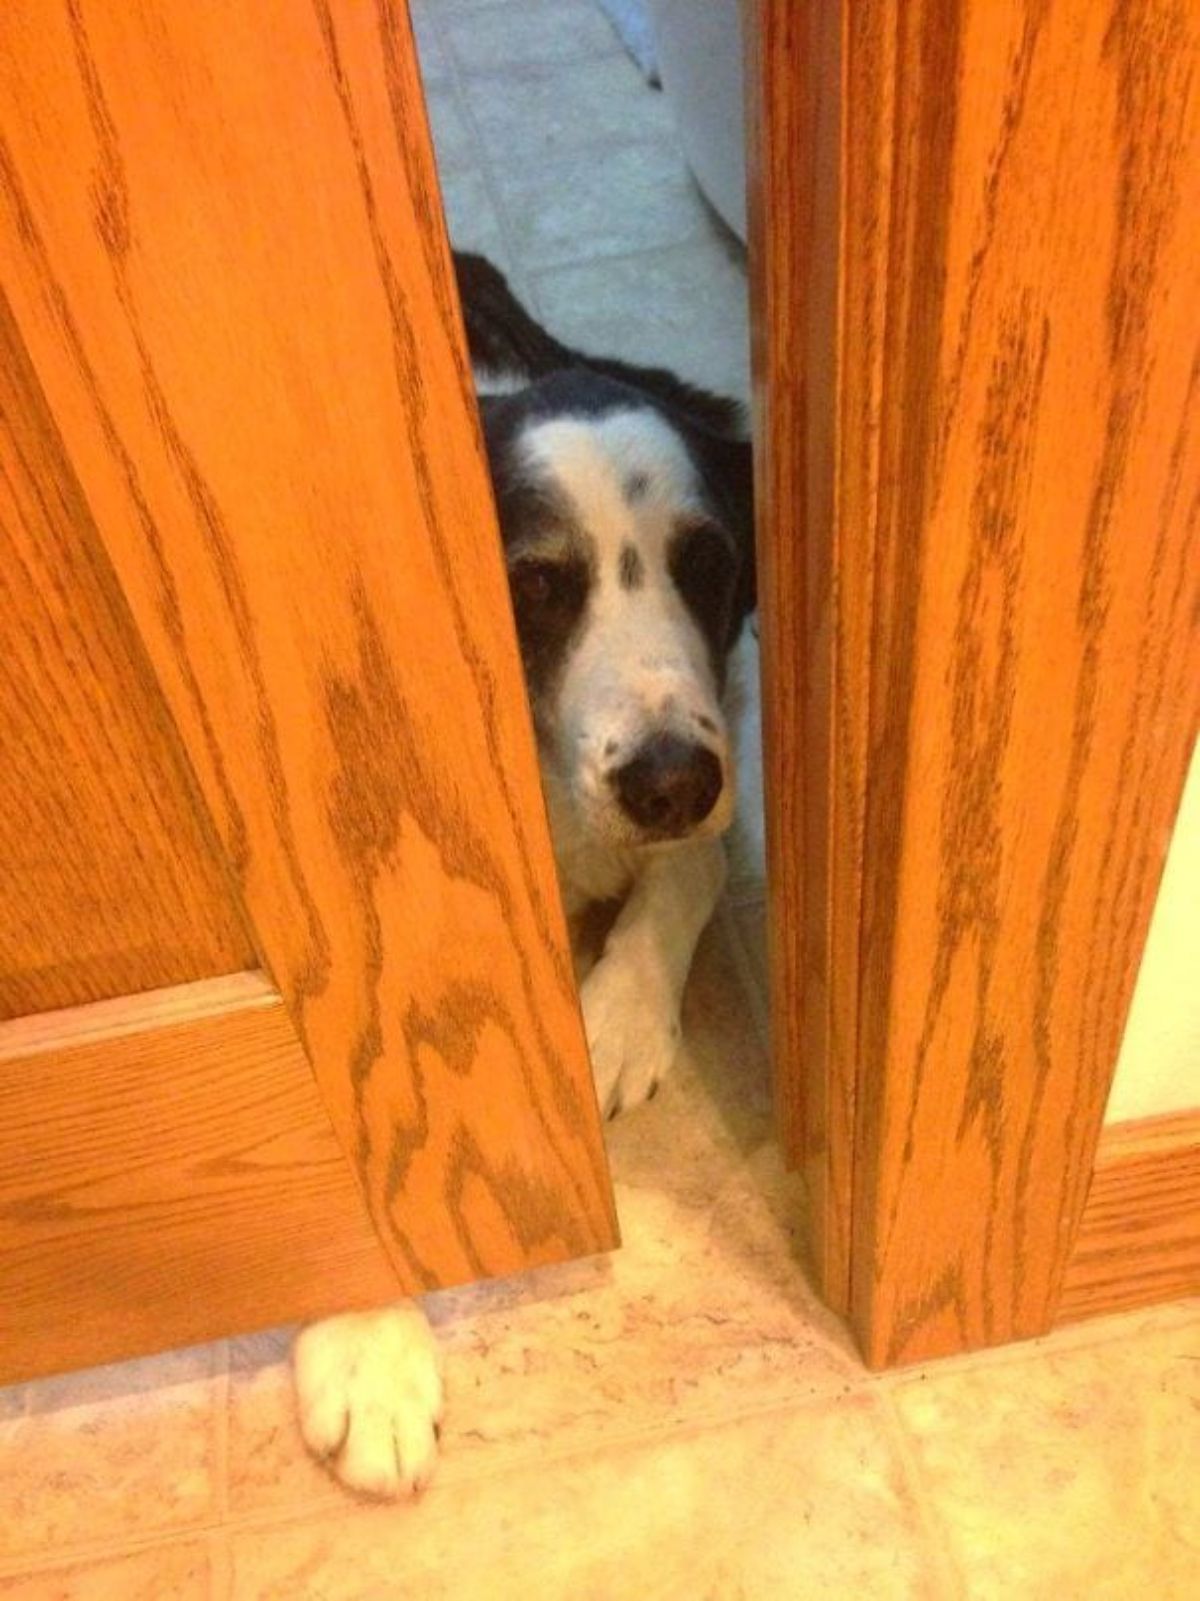 black and white dog peering between a brown door and doorjamb